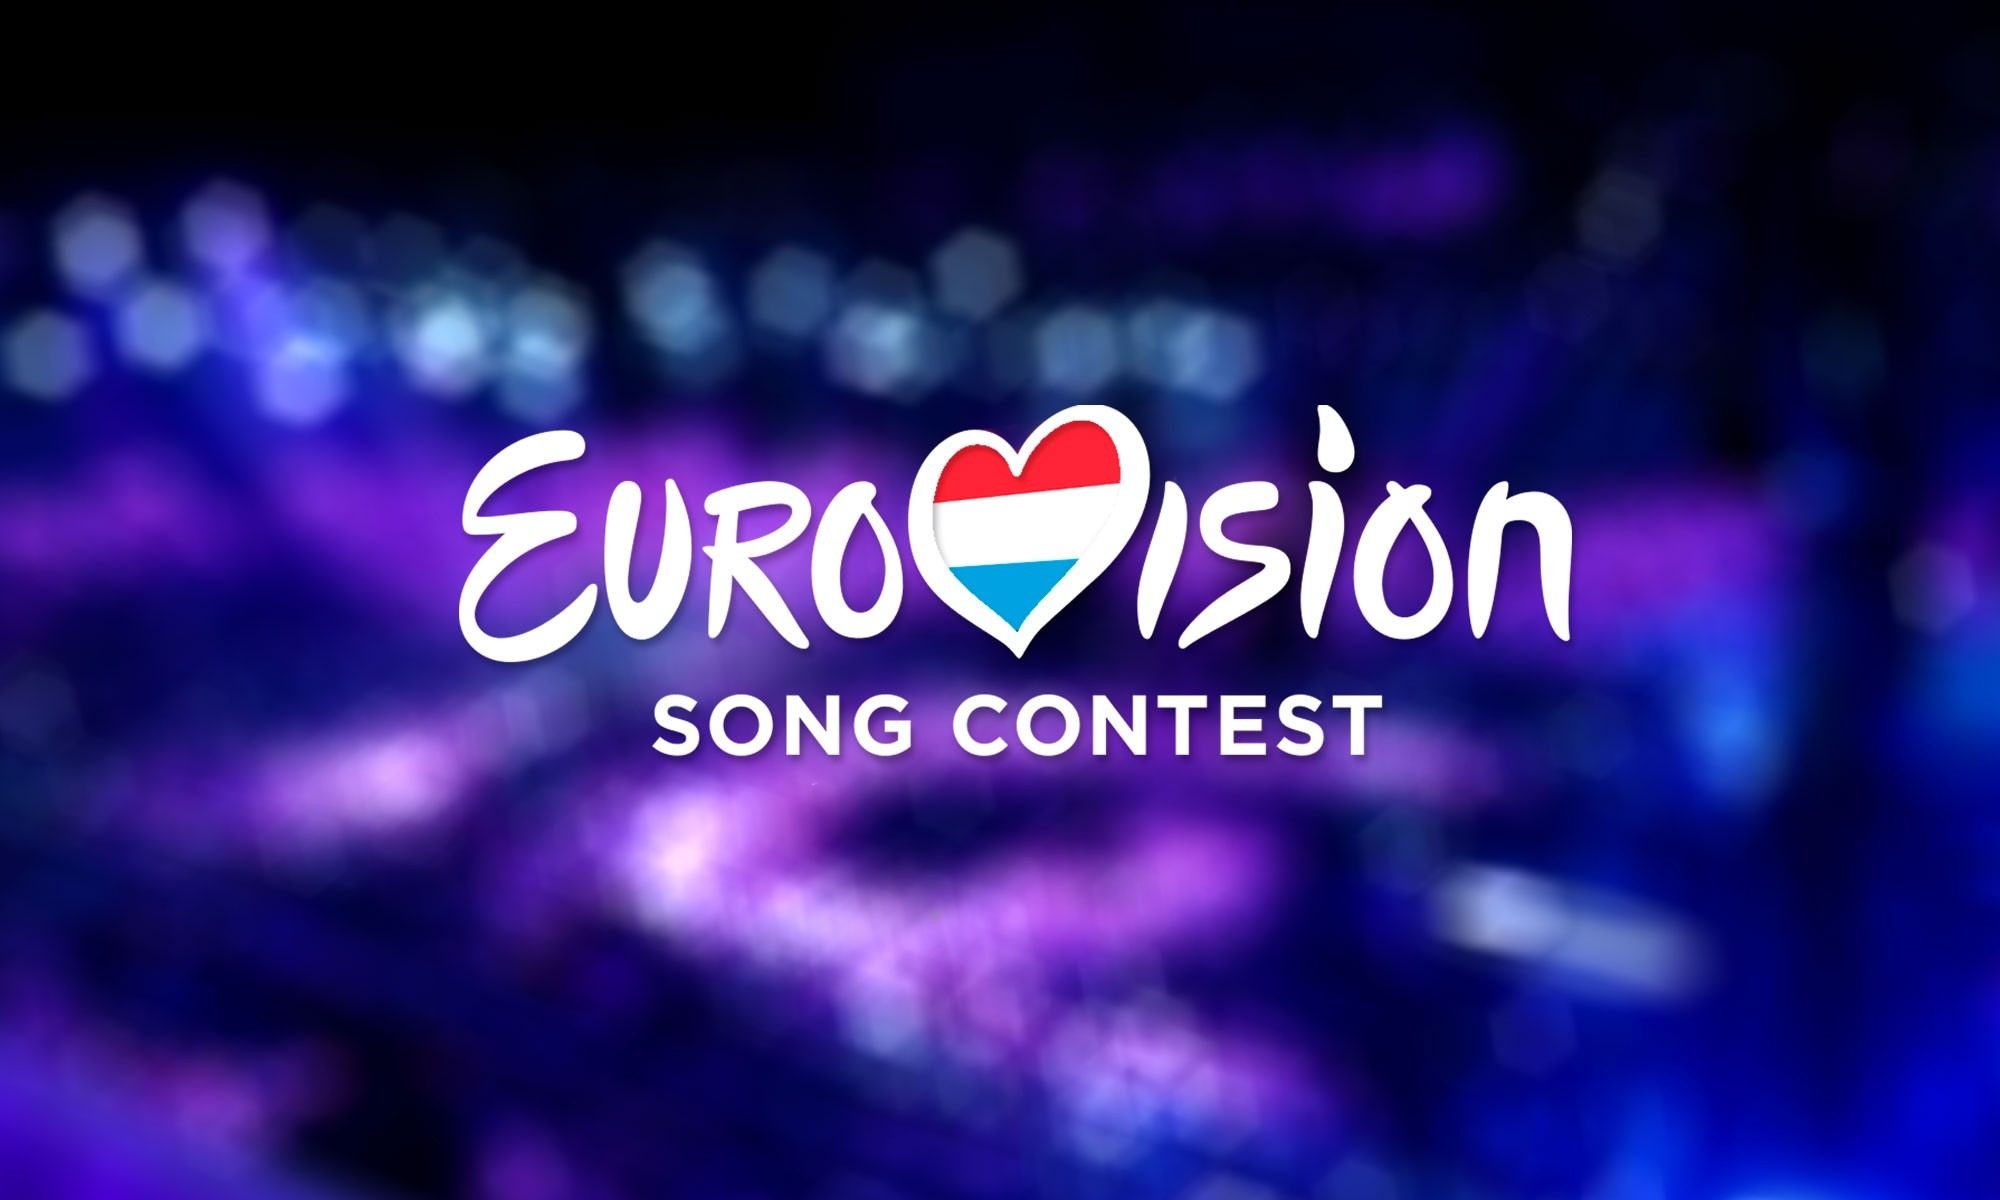 Après 30 ans d'absence, le Luxembourg participera à nouveau à l'Eurovision